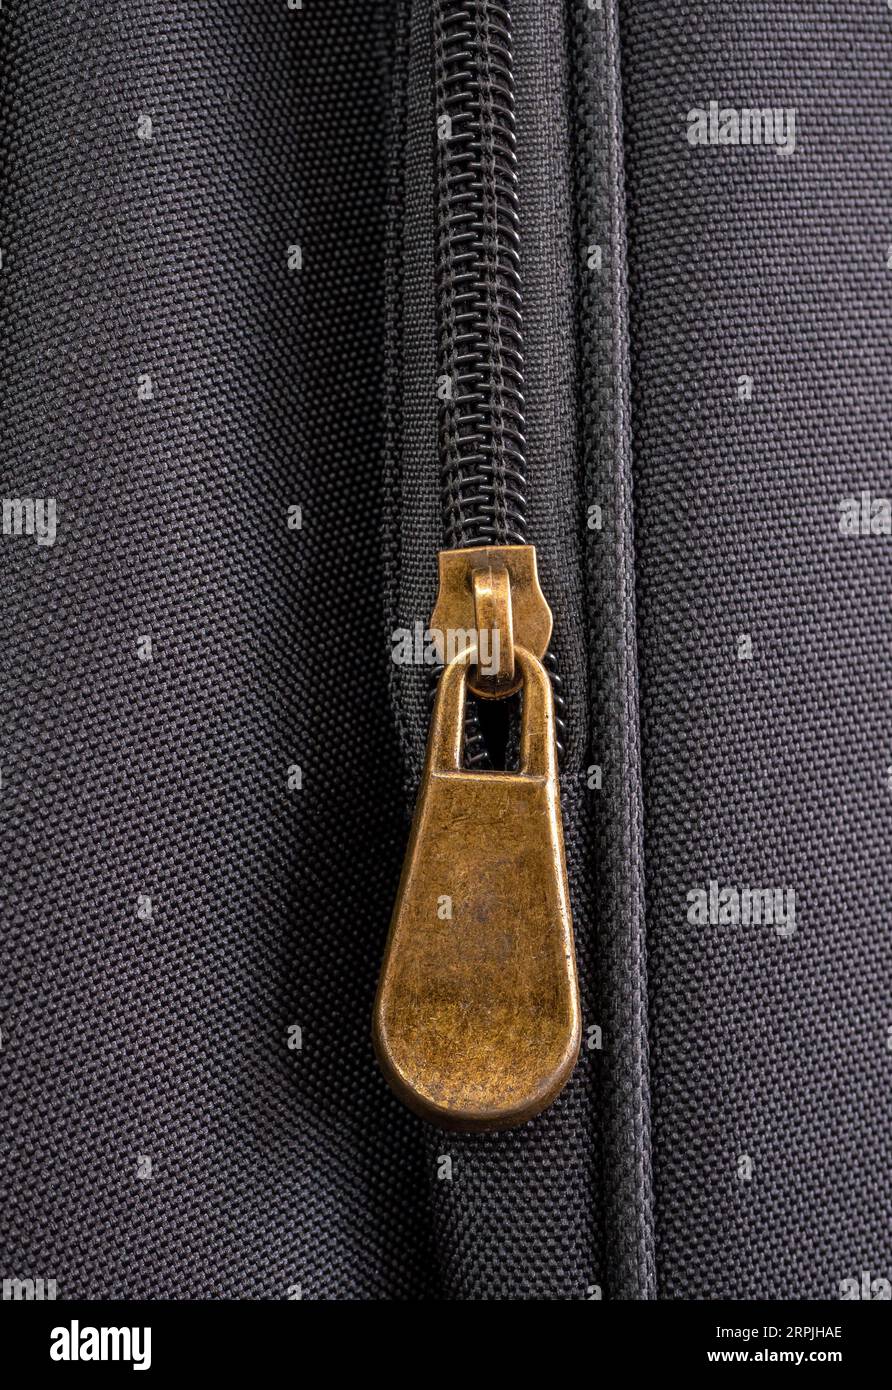 Dettaglio di una cerniera su una borsa per chitarra, primo piano Foto Stock